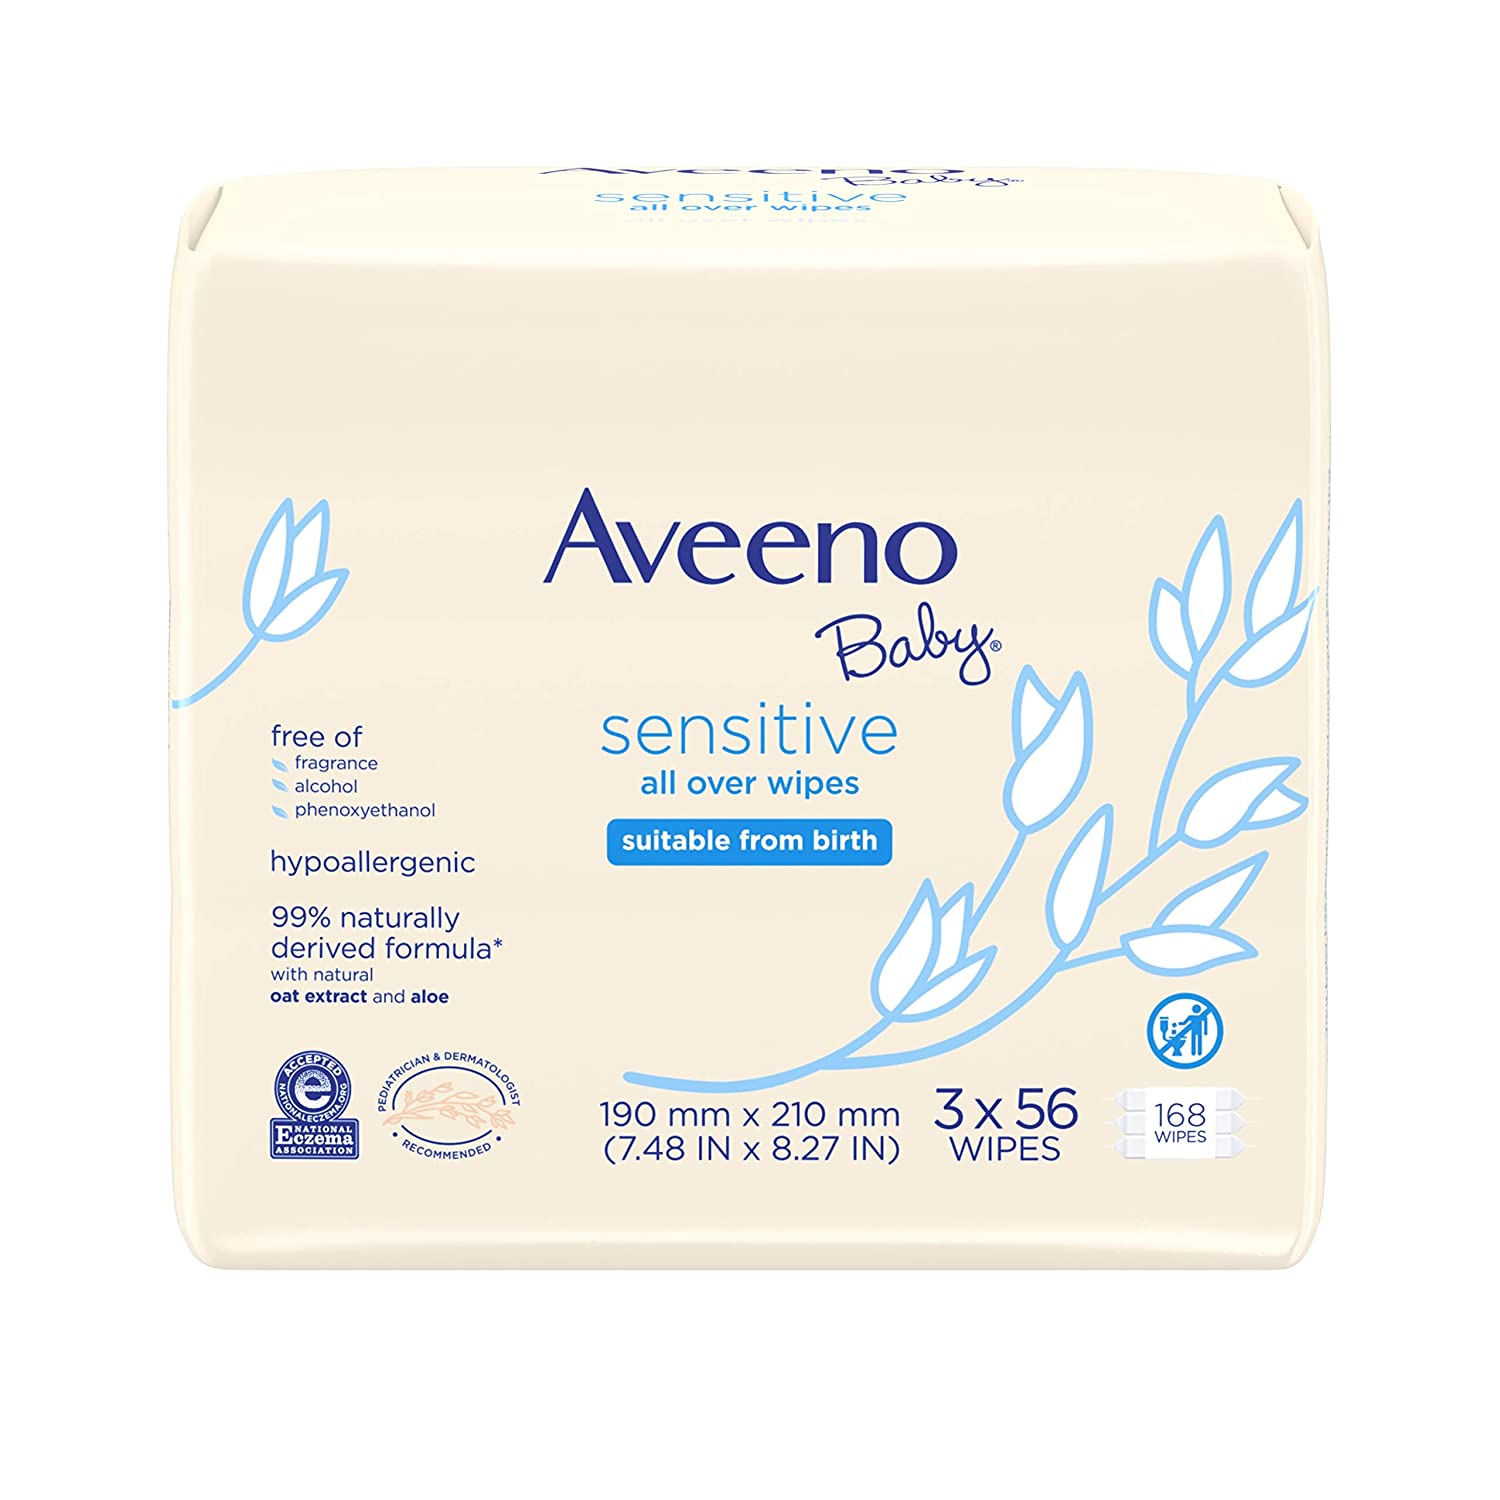 Aveeno Baby Oat Extract & Aloe Baby Wipes For Sensitive Skin